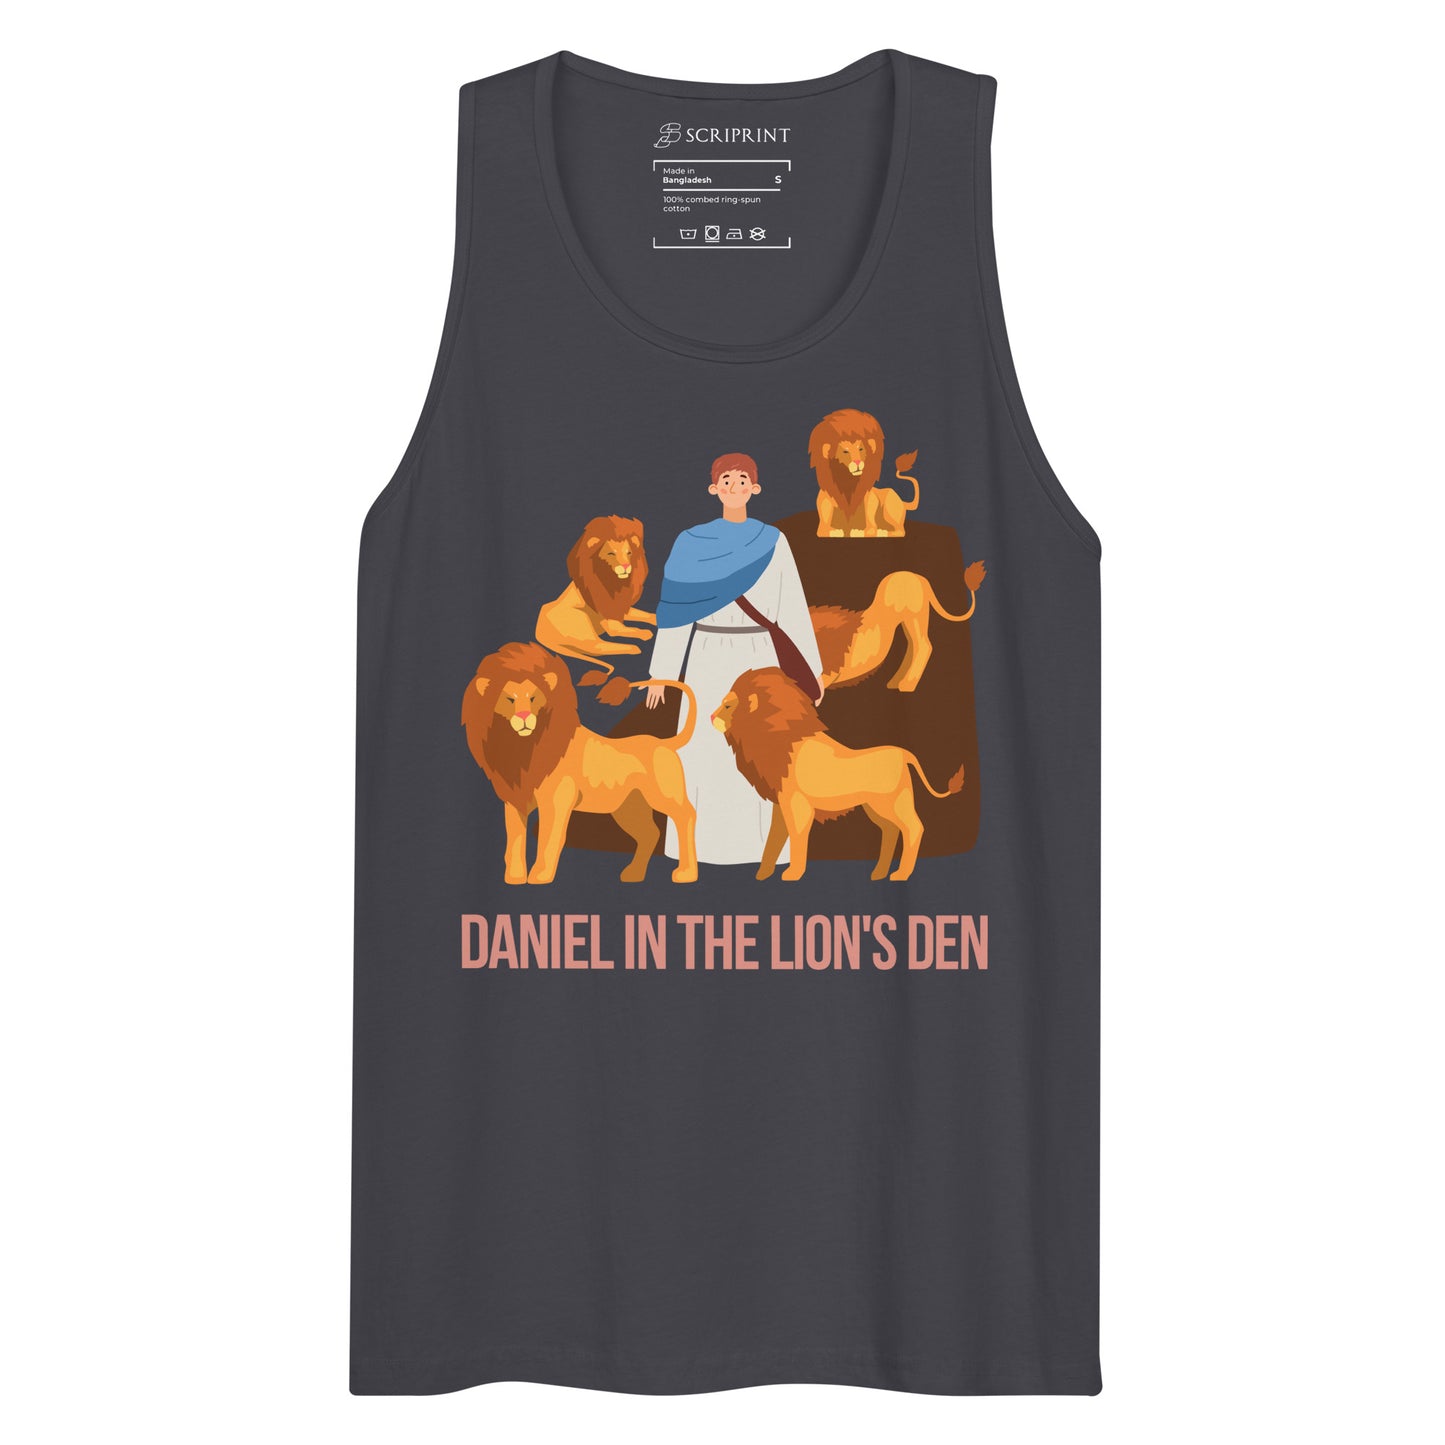 Daniel in the Lion's Den Men’s Premium Tank Top